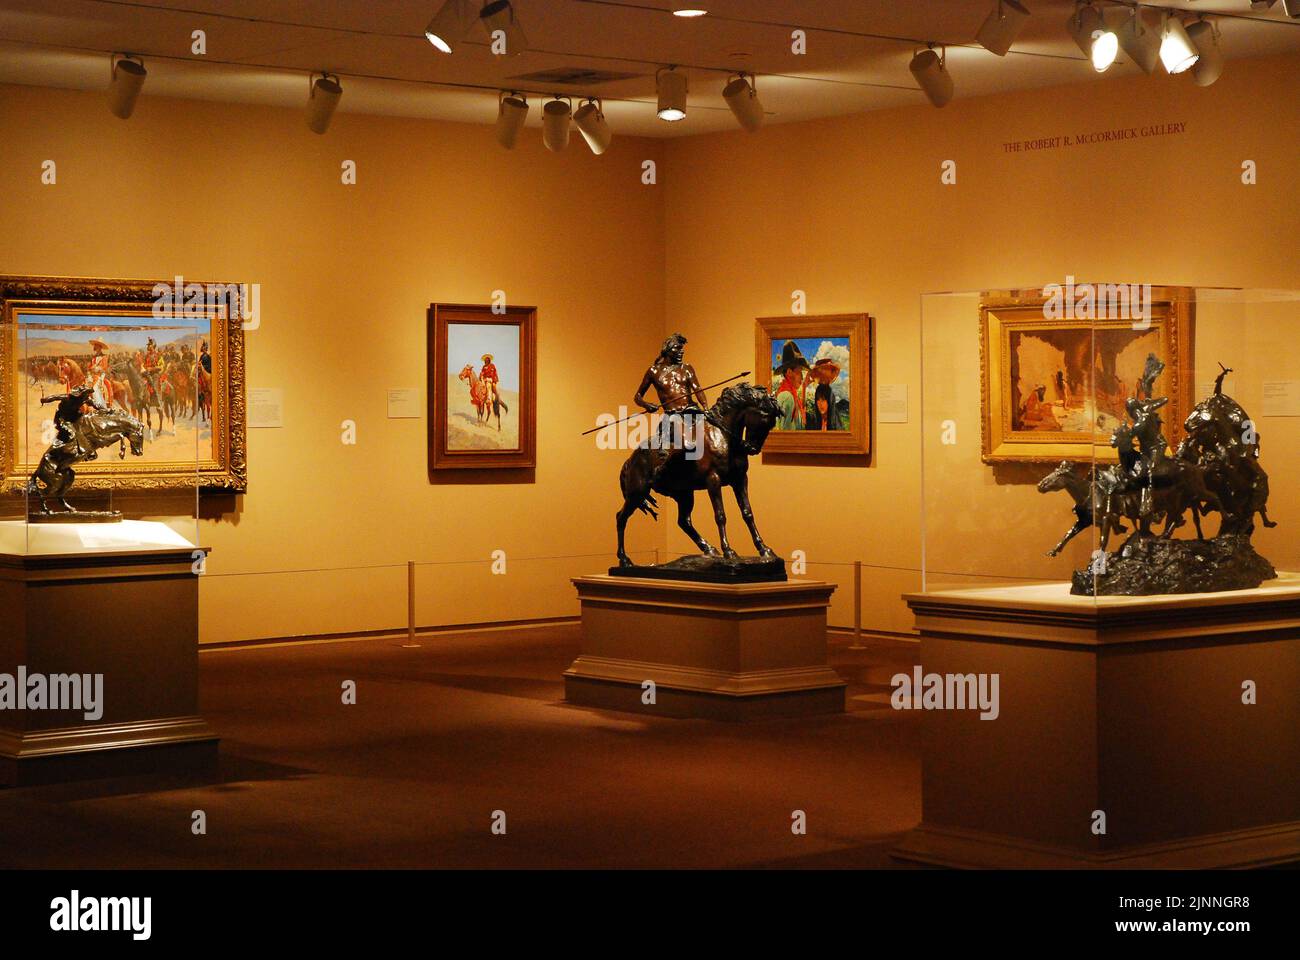 Westliche Themen wie Cowboys, Pferde, Indianer und Old West heben den amerikanischen Flügel des Art Institute of America hervor Stockfoto